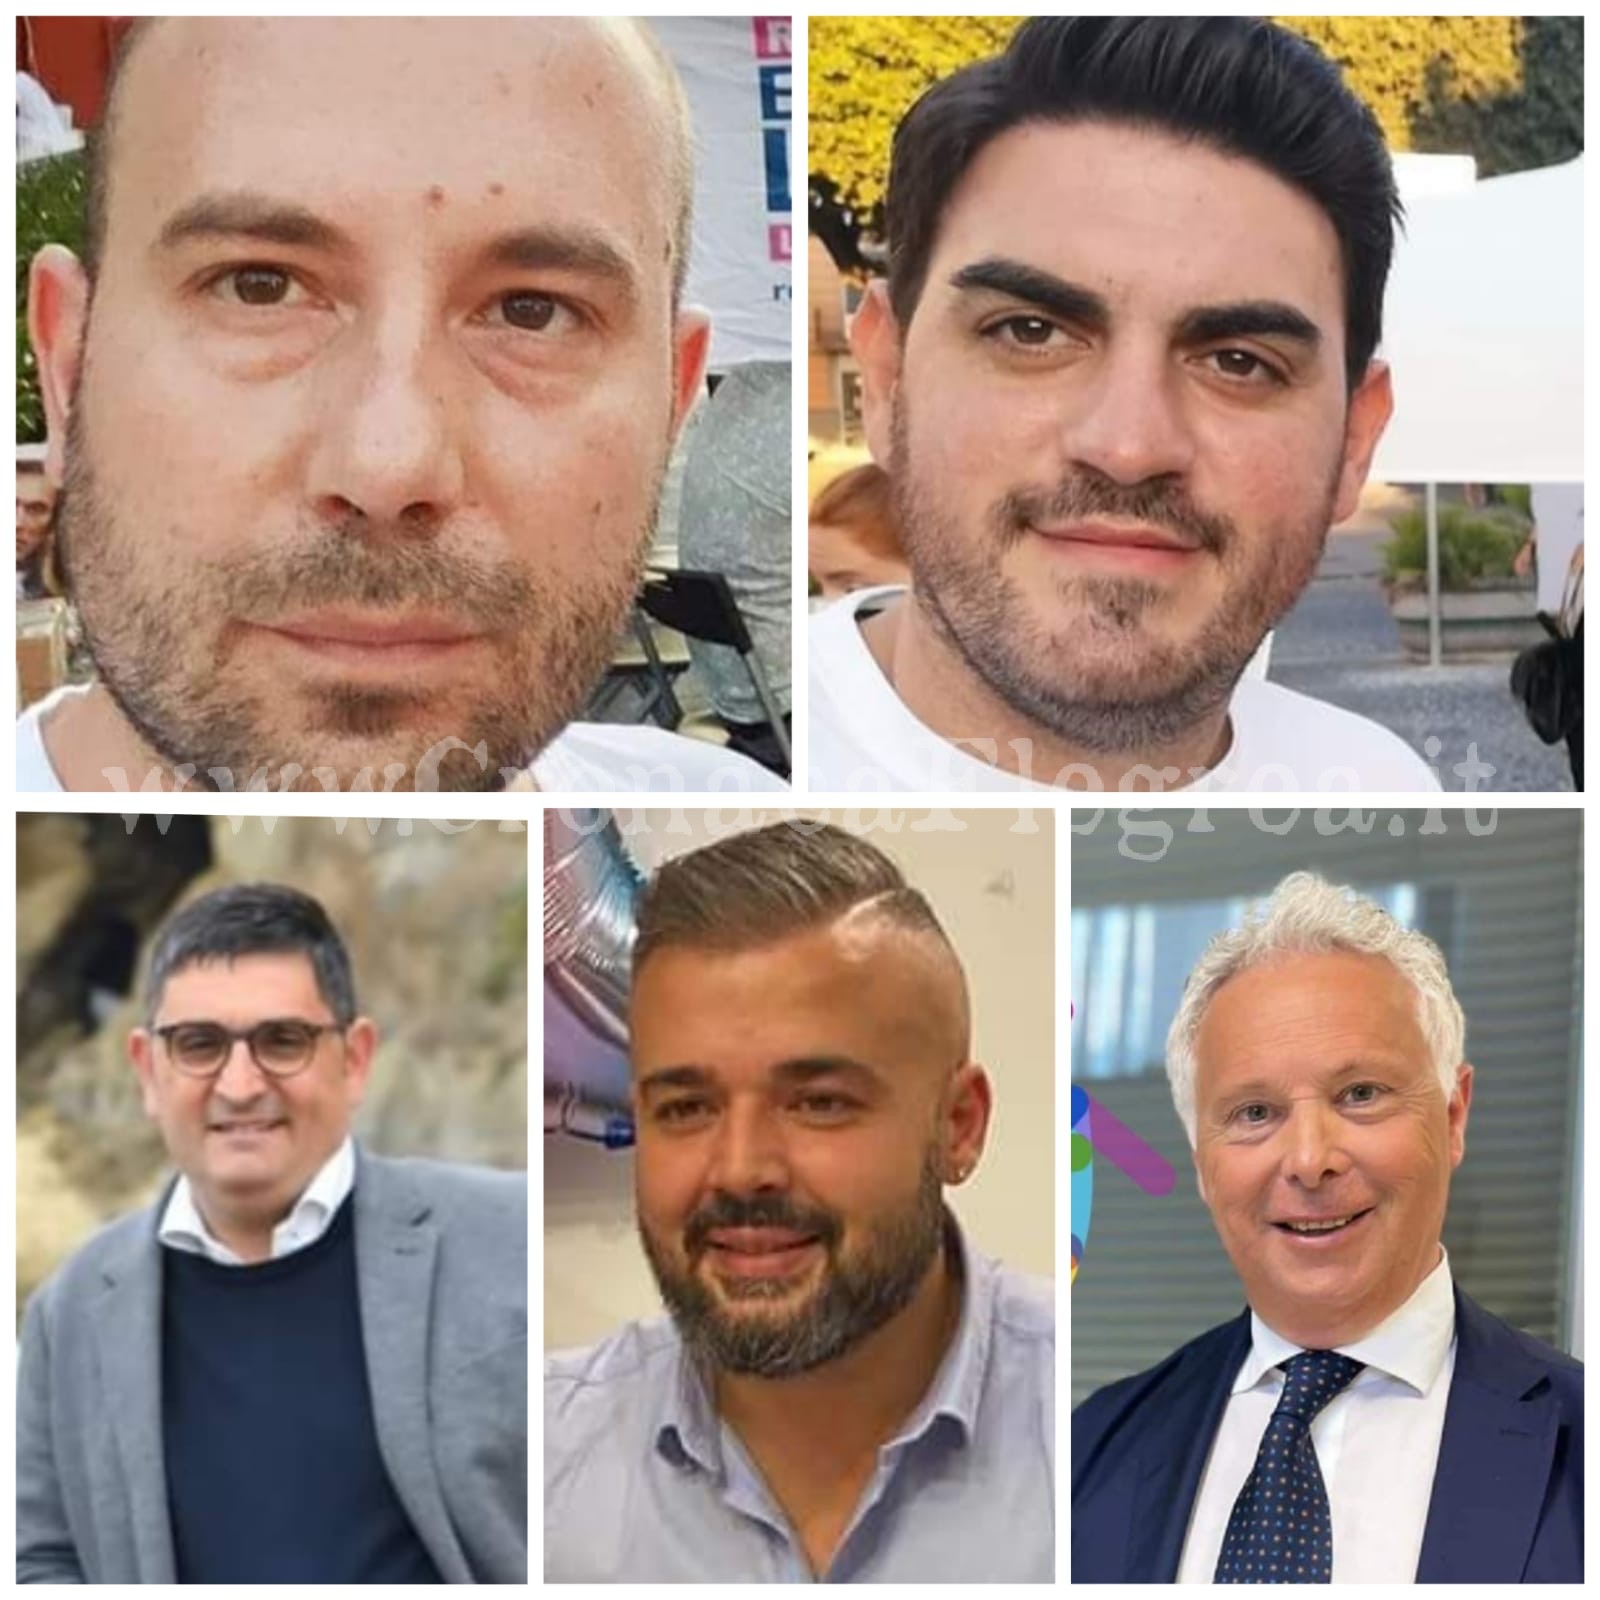 Cinque candidati a sindaco di Pozzuoli: domenica si vota – I NUMERI